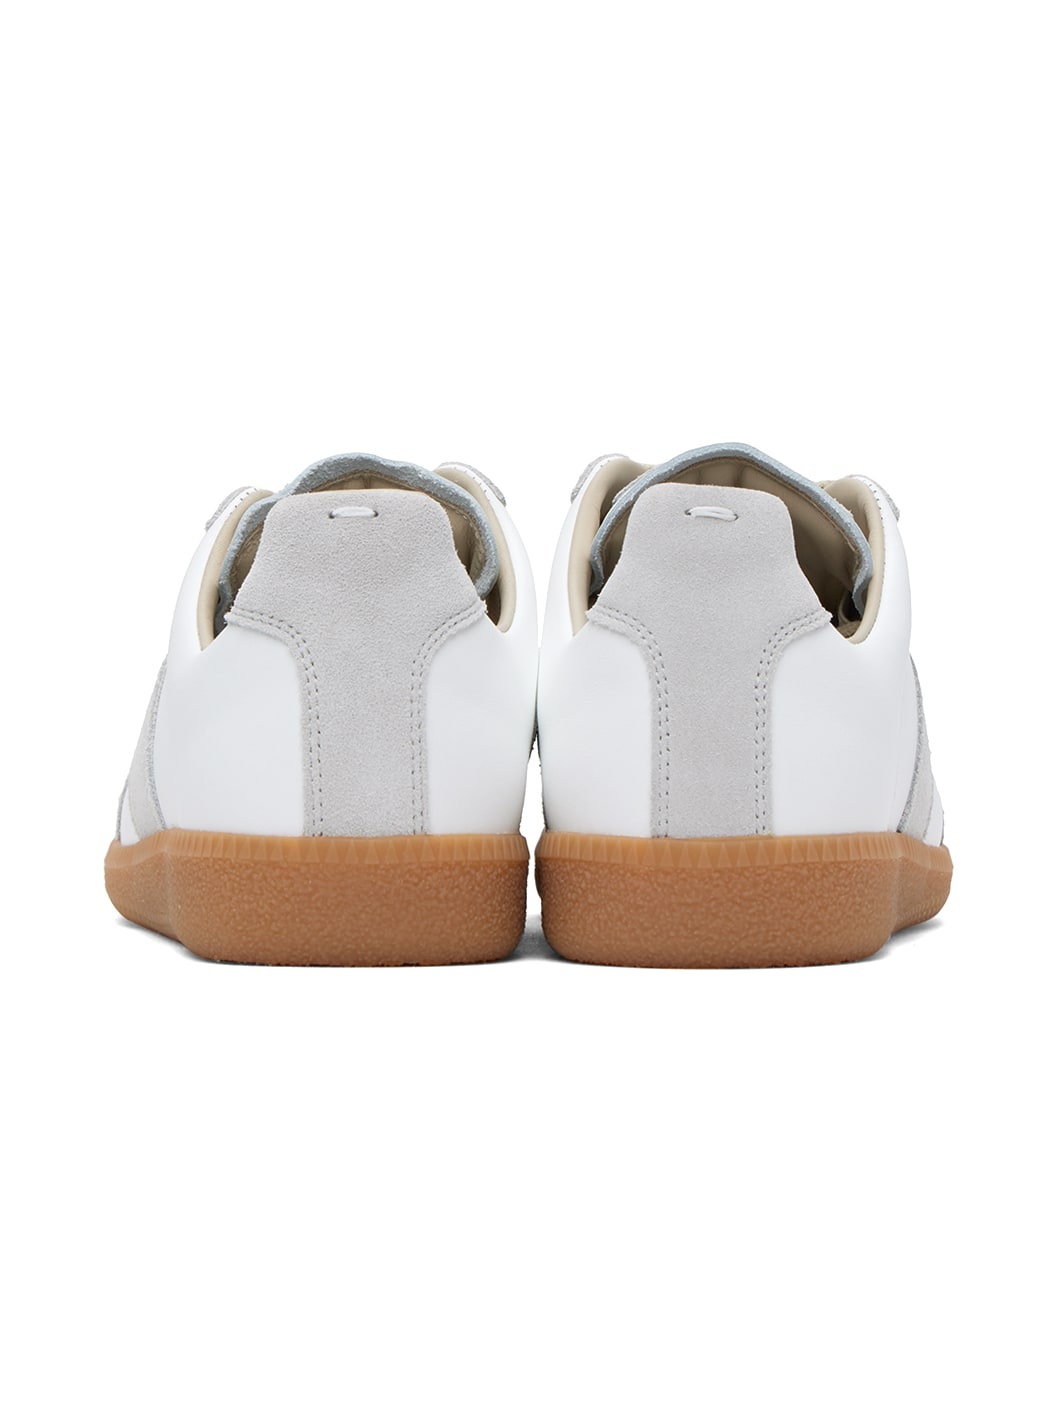 Gray & White Replica Sneakers - 2